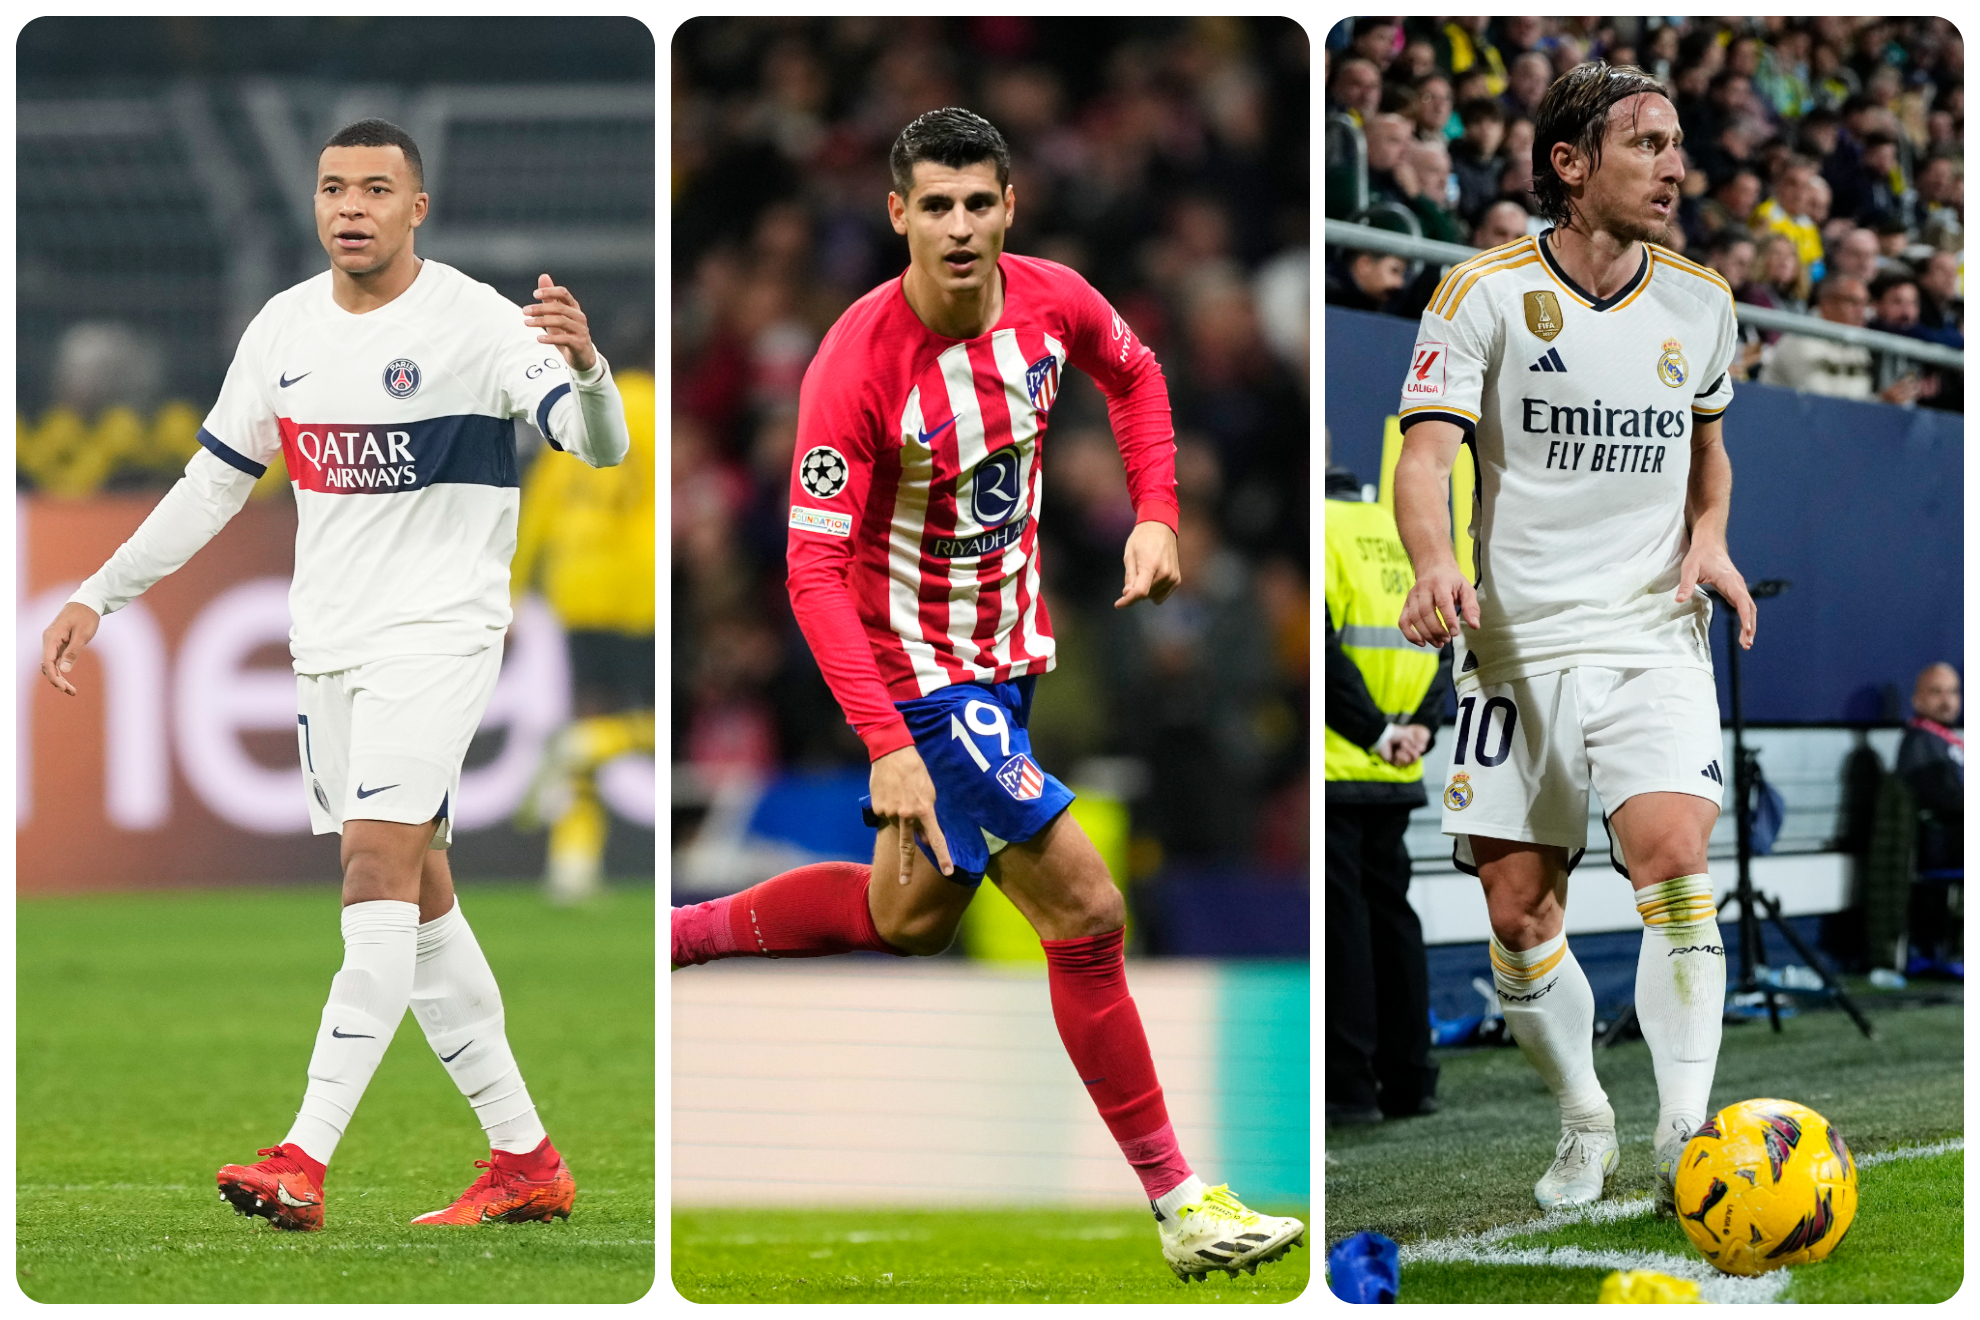 Mbapp, Morata y Modric podran cambiar de escudo este verano en Europa.